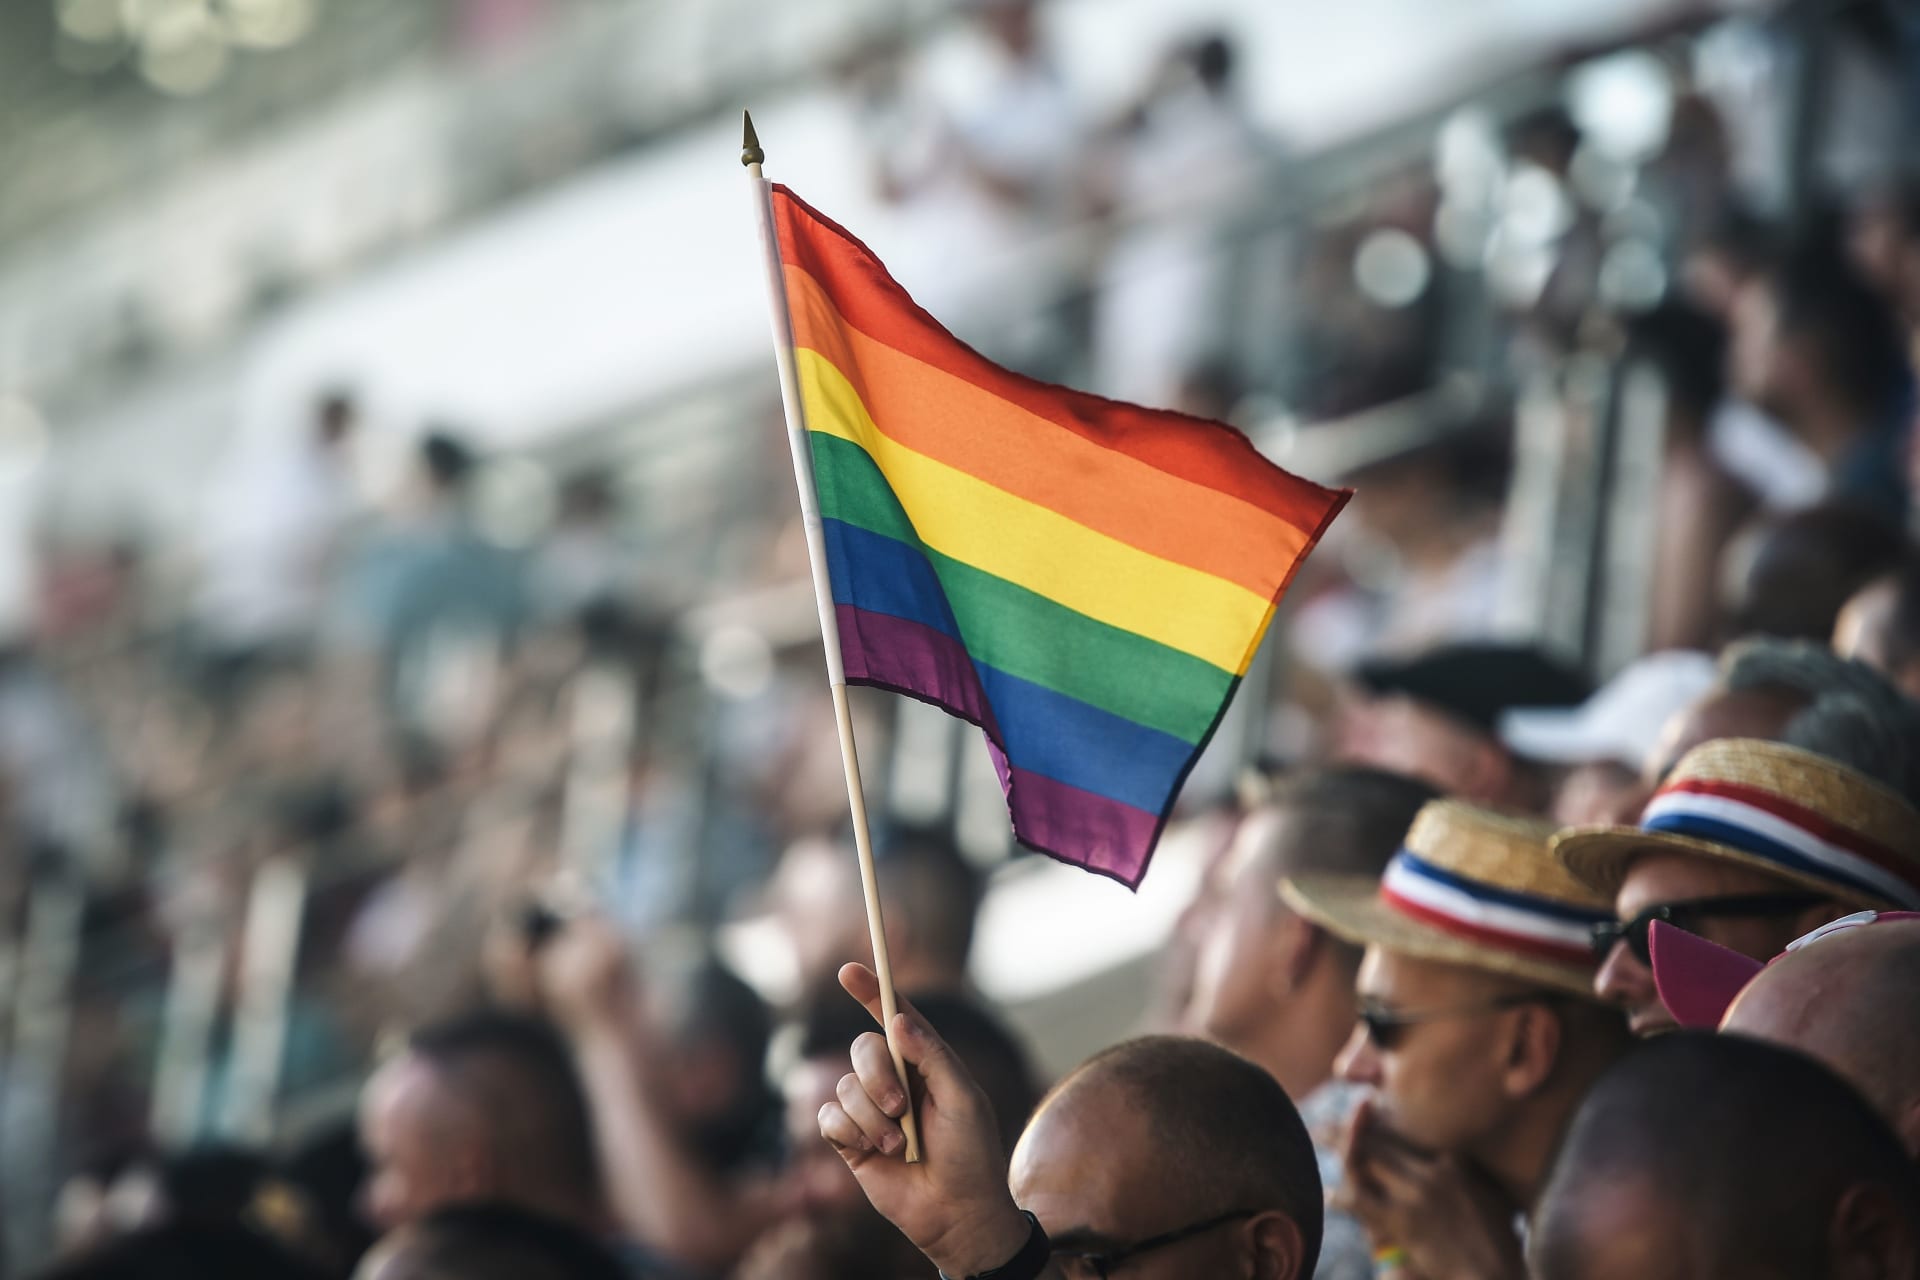 سفير لمونديال قطر: المثلية الجنسية "حرام" وتسبب "ضررا للعقل"